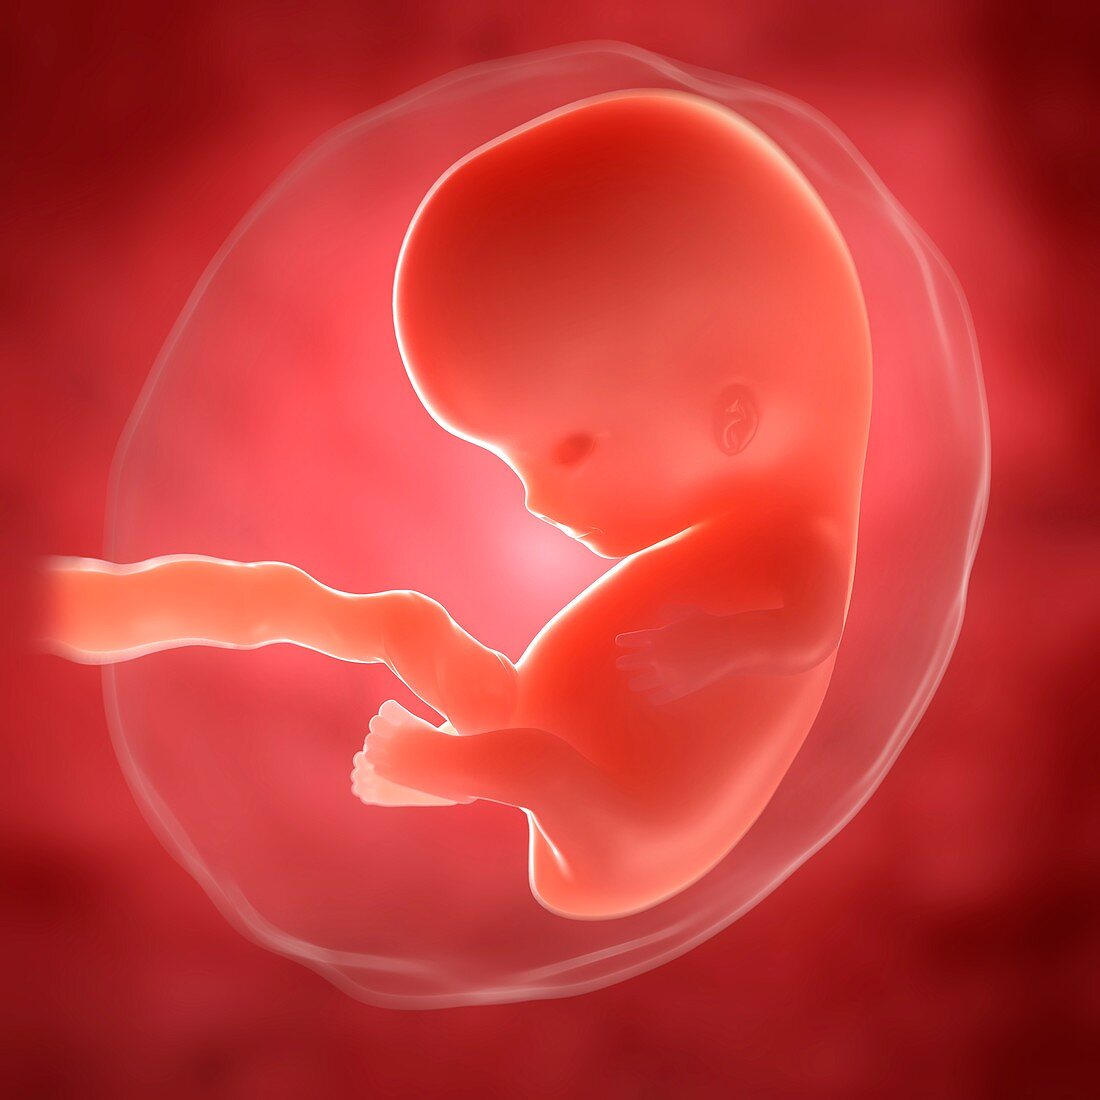 Foetus at 8 weeks,artwork